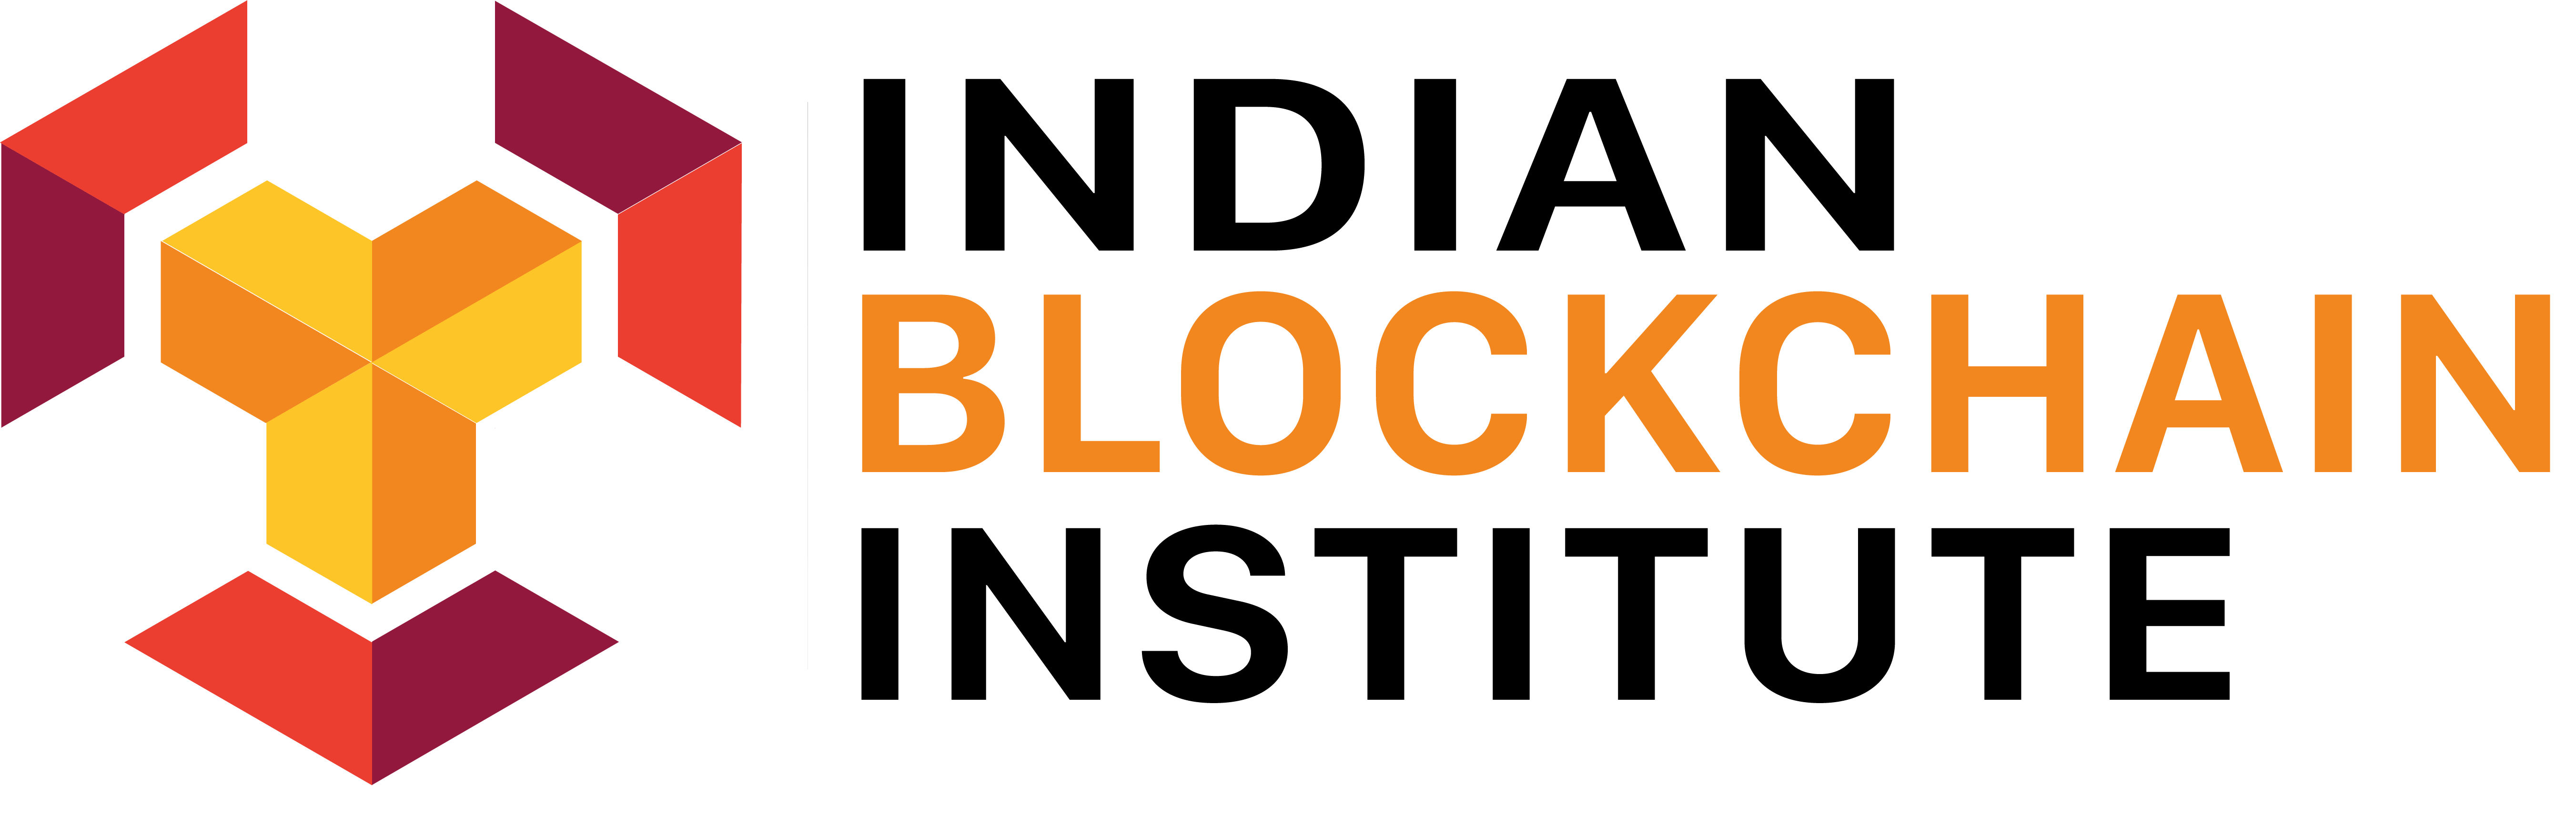 Indian Blockchain Institute Logo